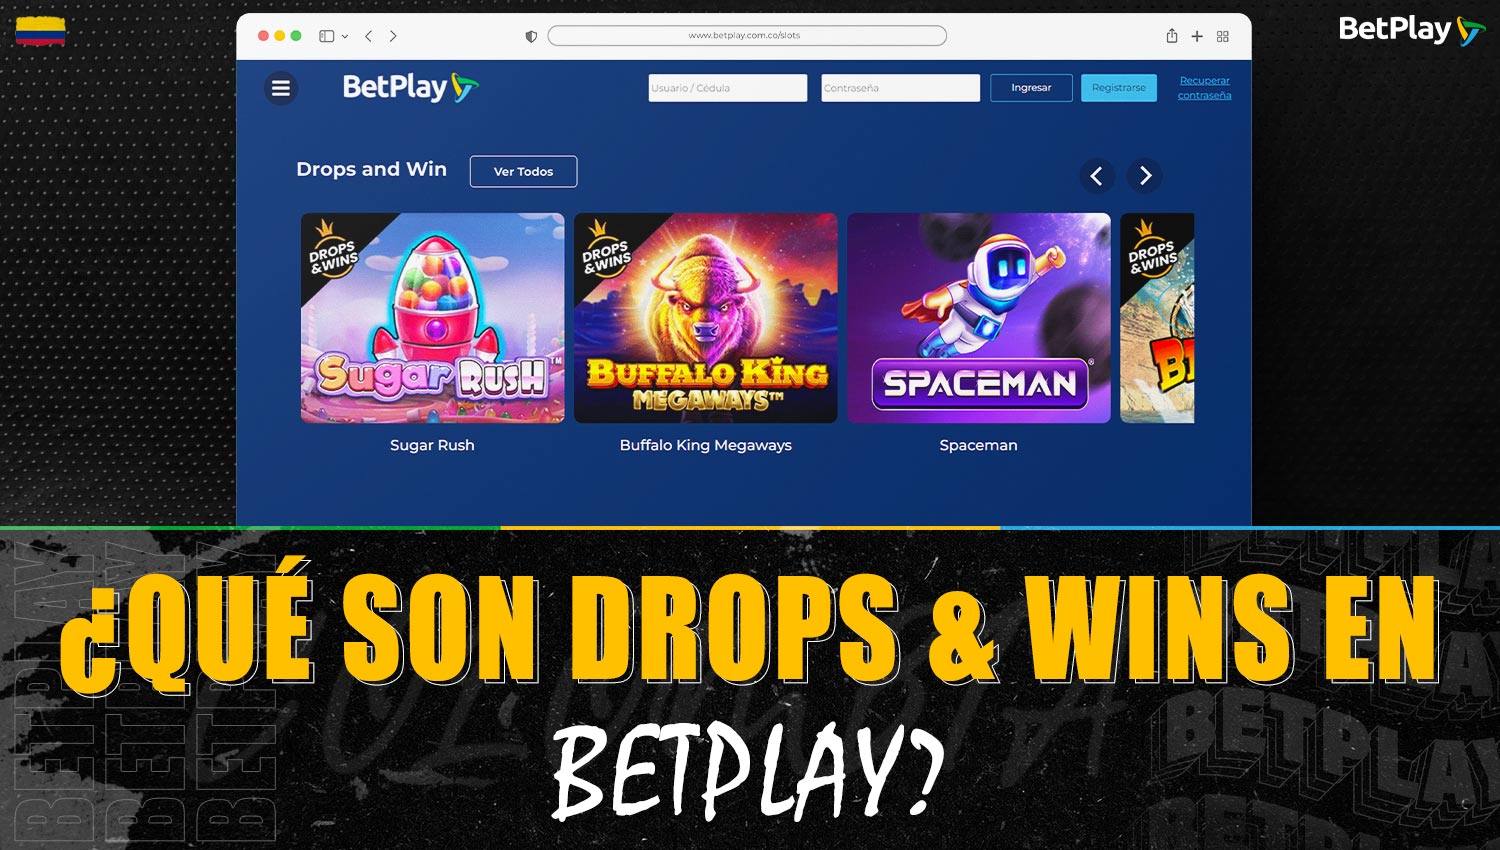 Descripción detallada de "Drops and Wins" en la plataforma Betplay Colombia